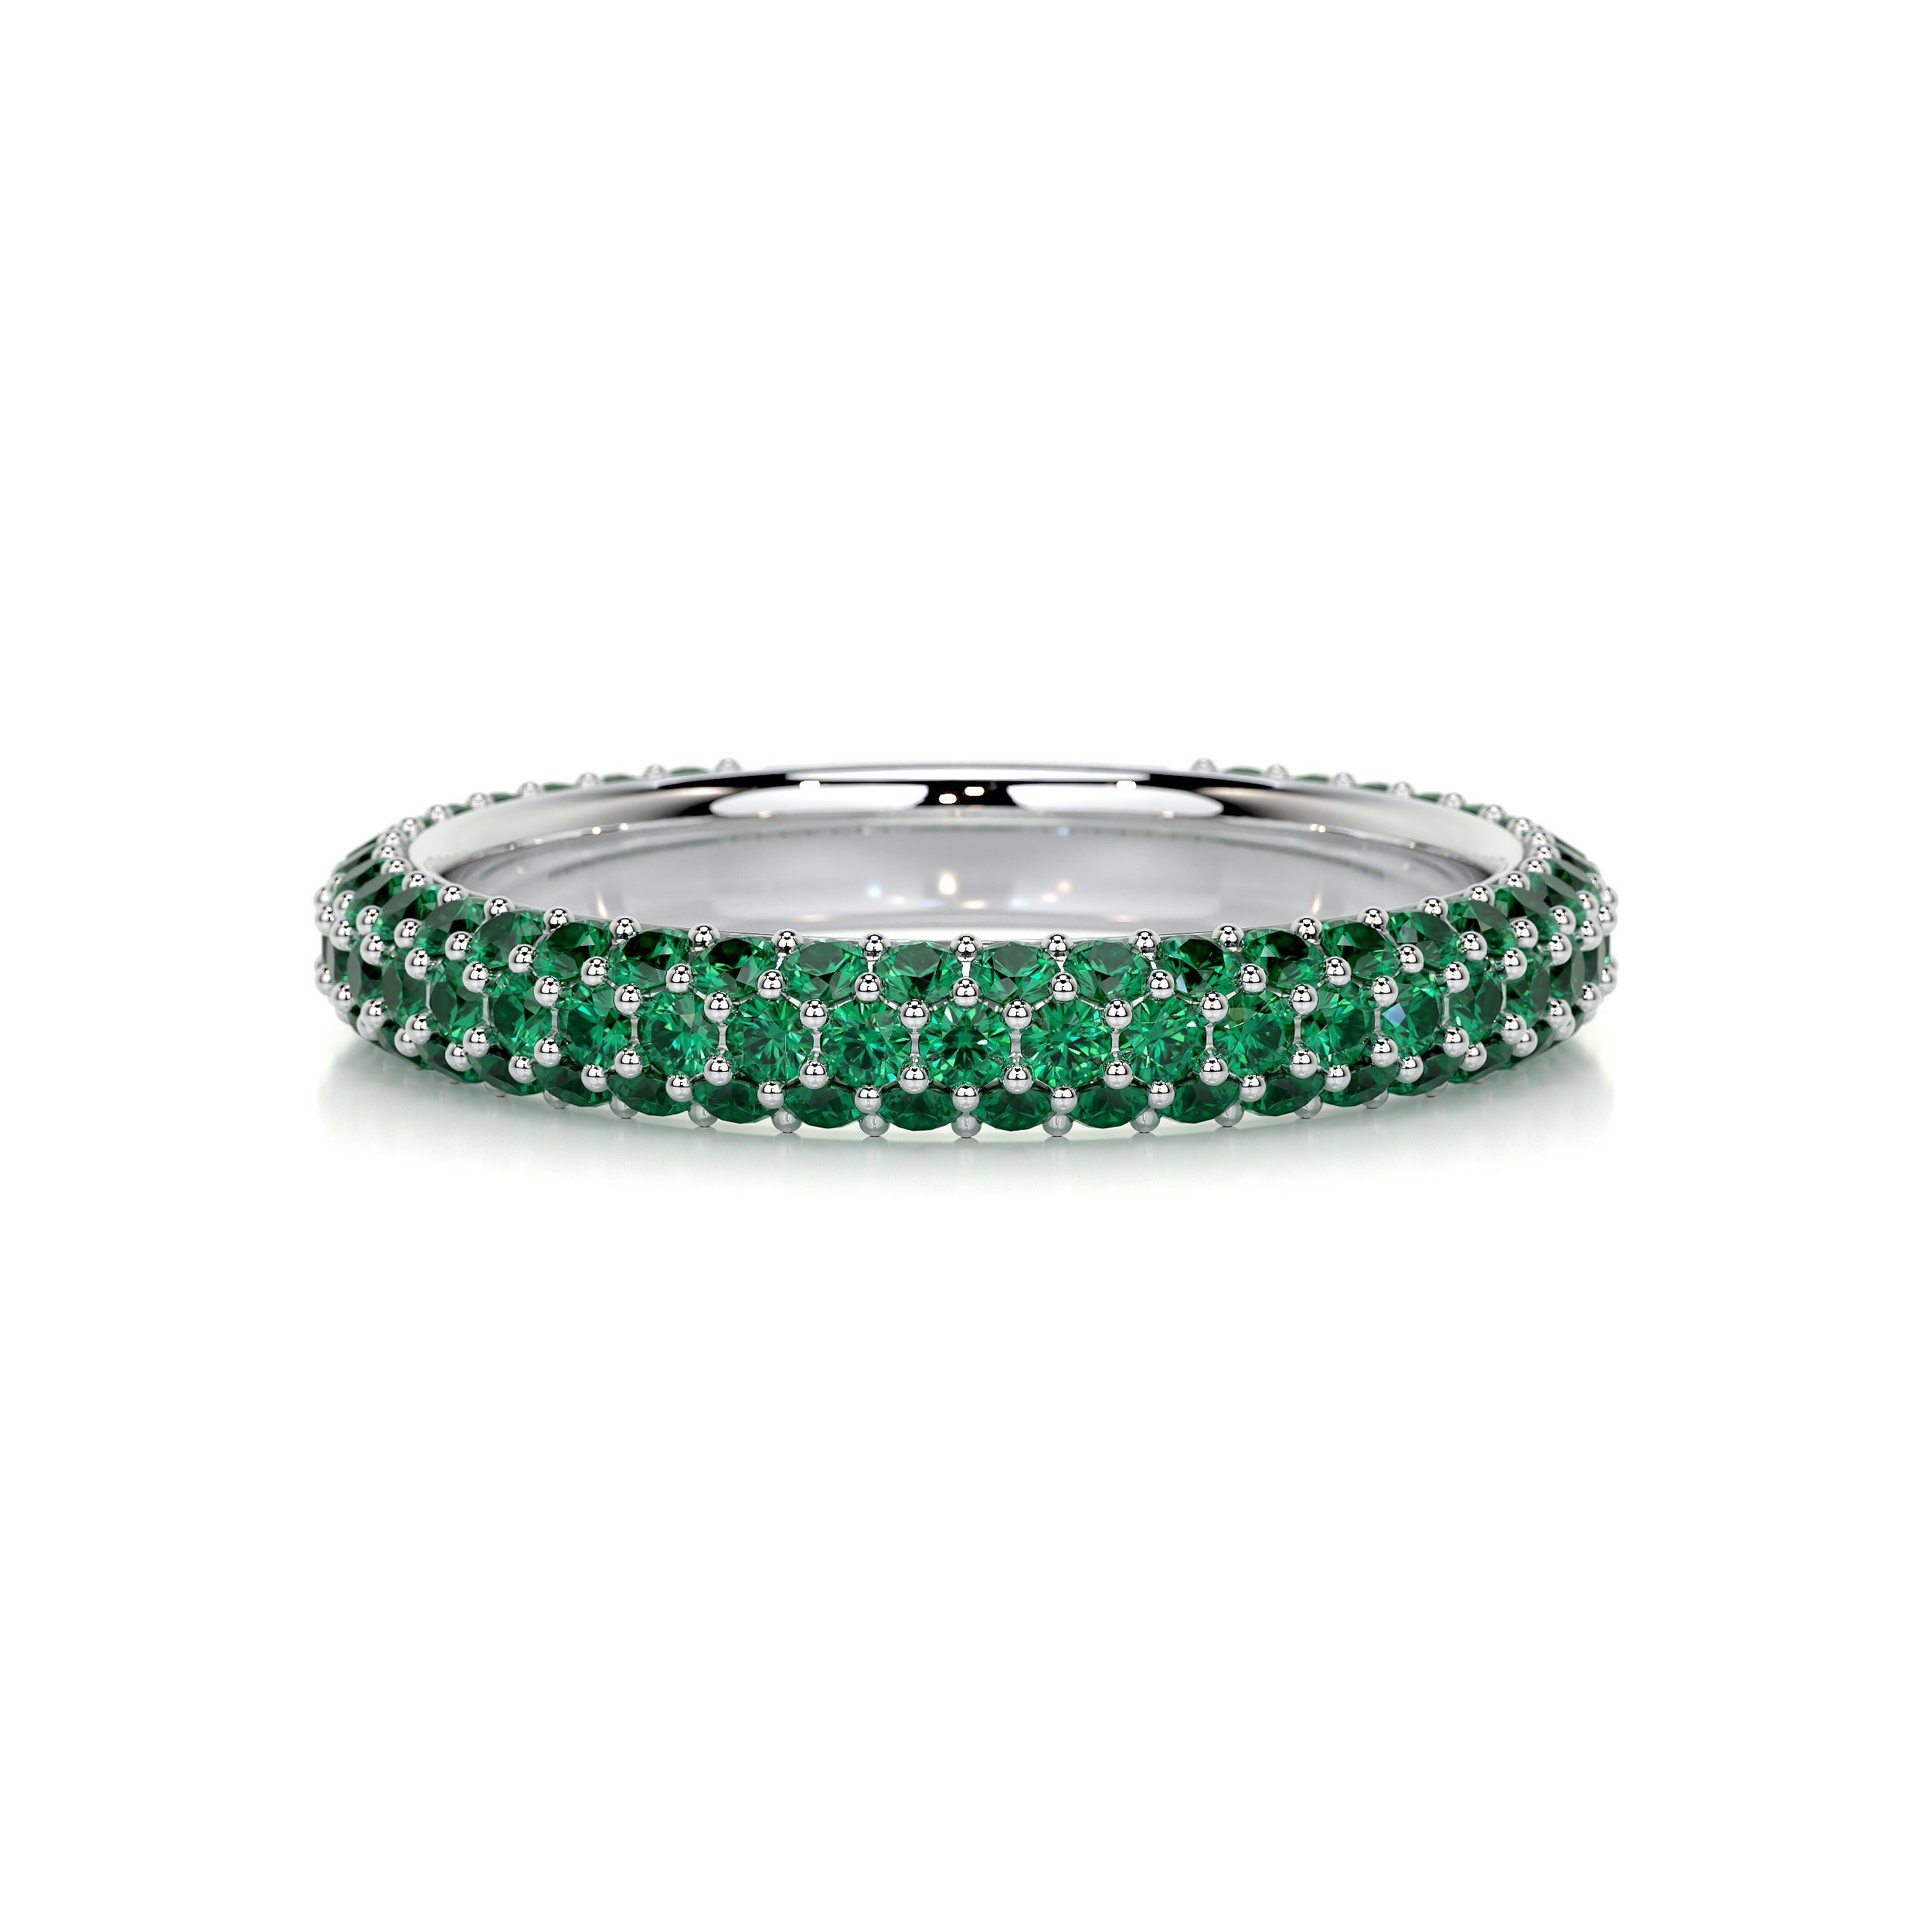 Emma Green Gemstone Wedding Ring   (1.25 Carat) - 18K White Gold